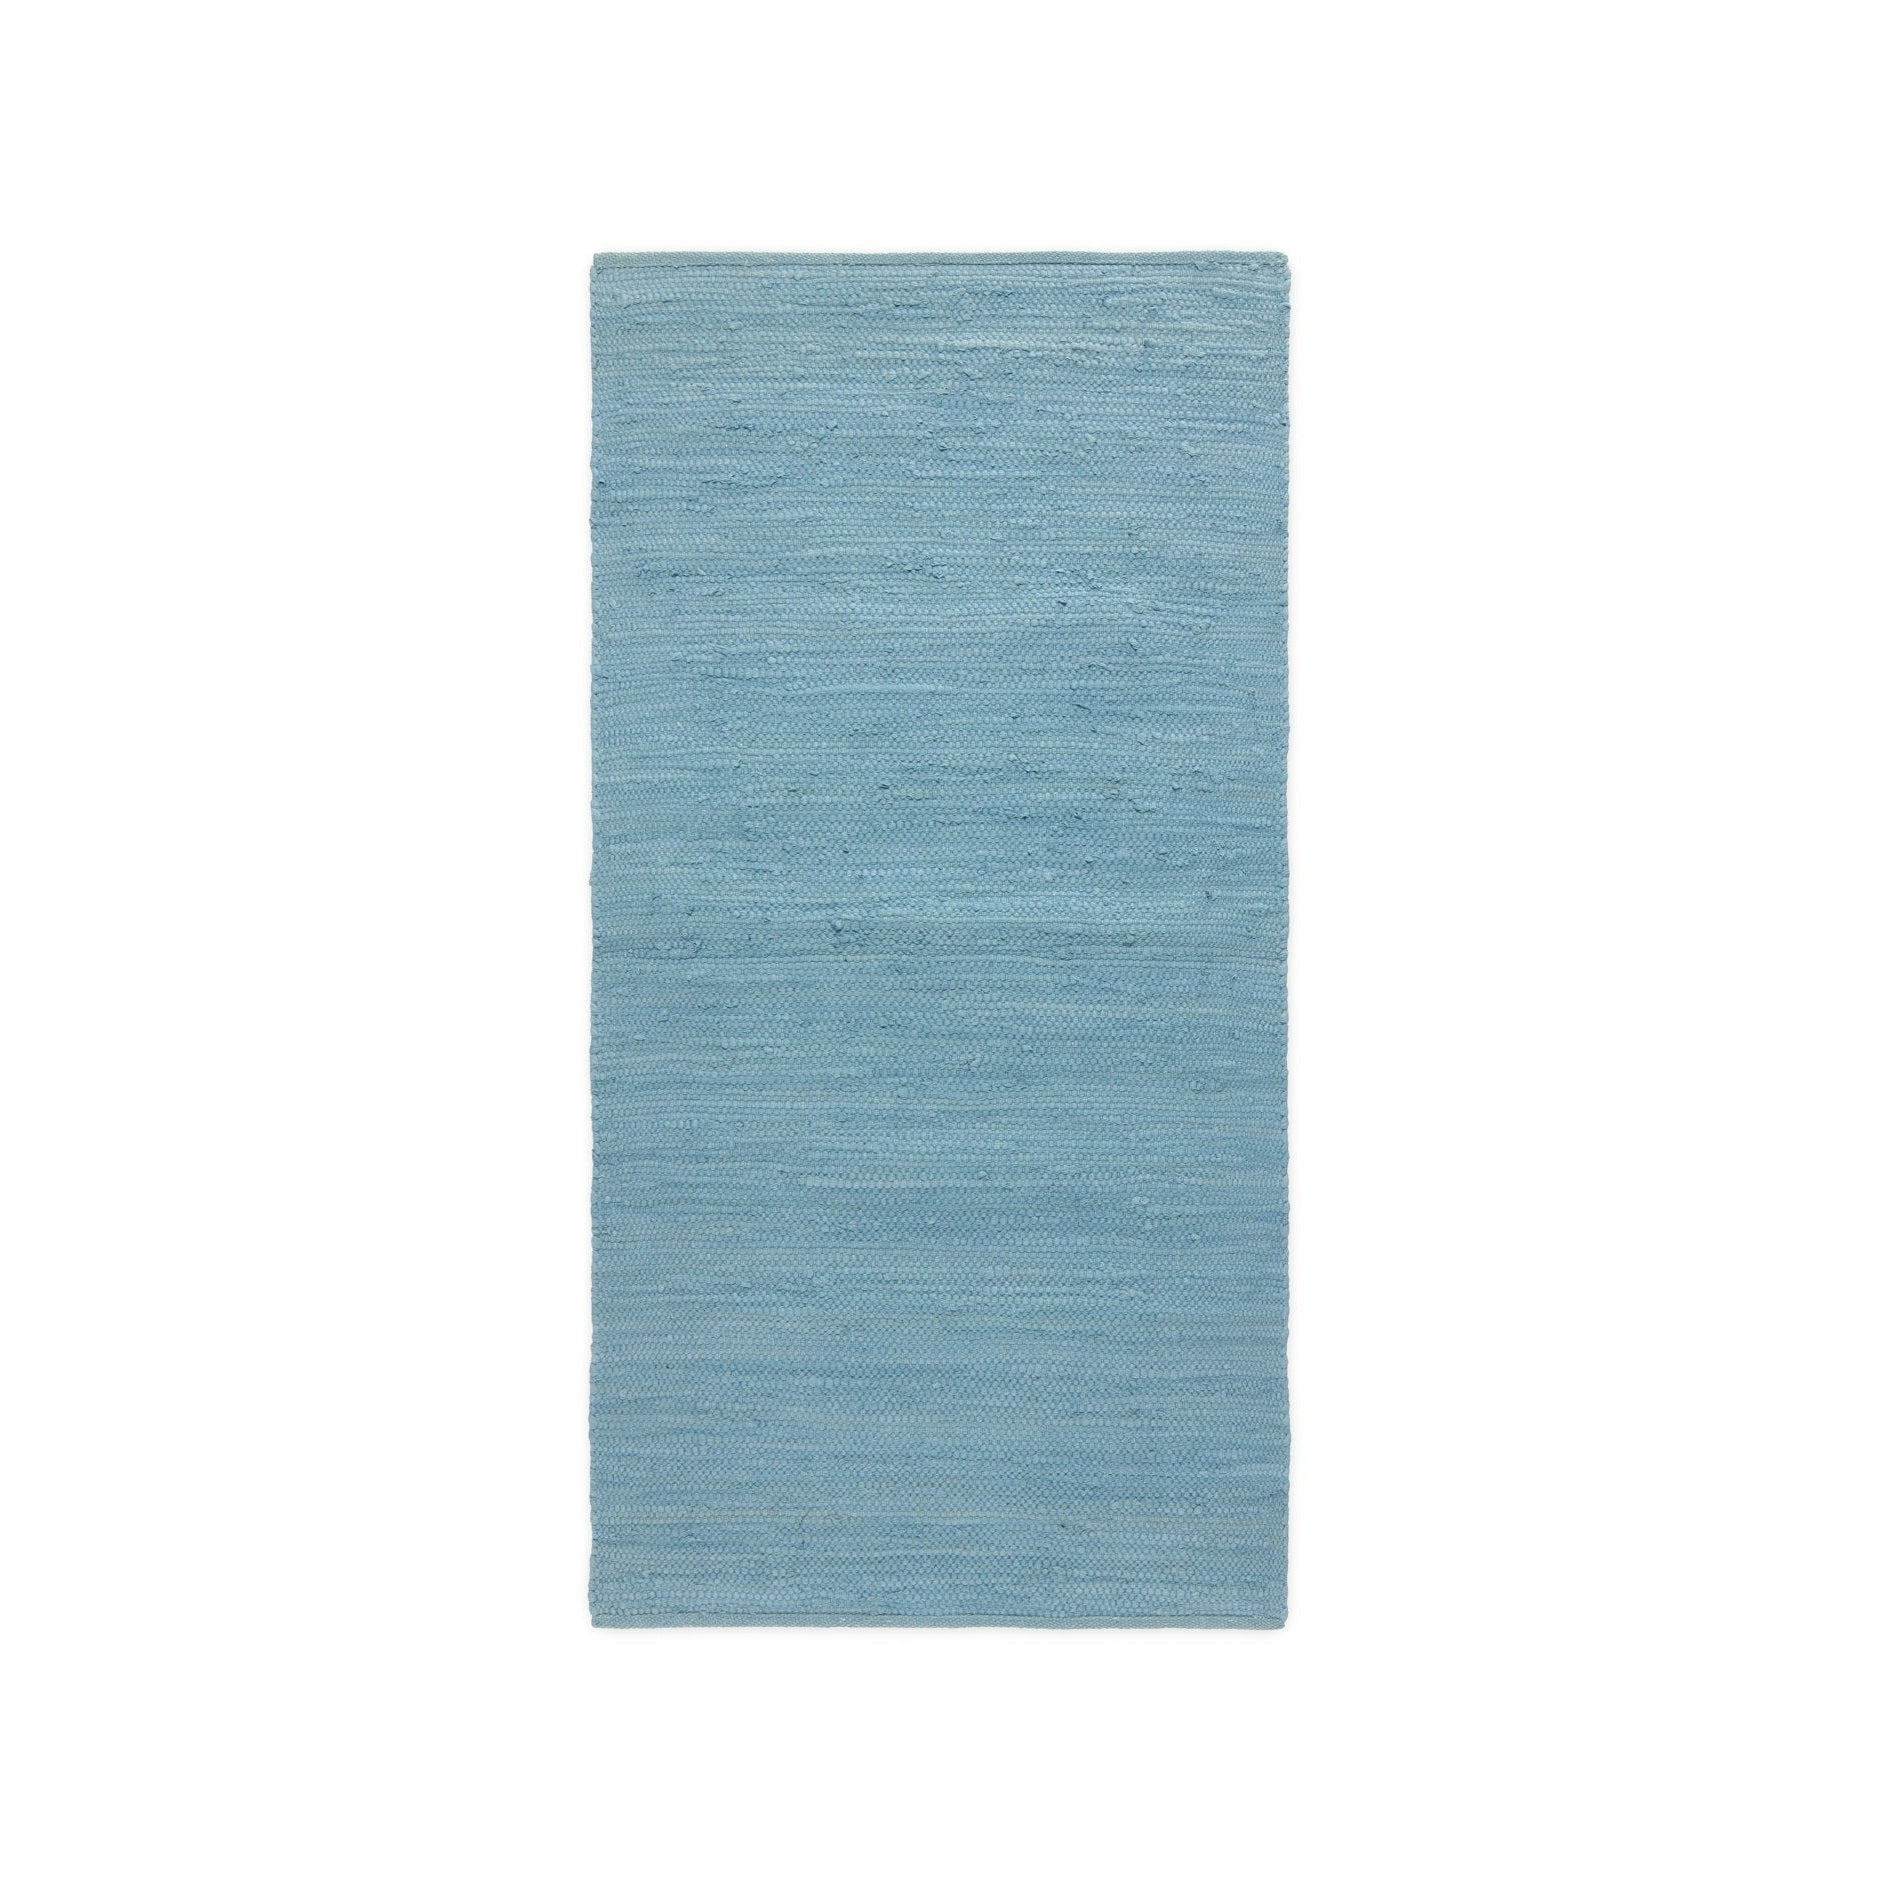 Rug Solid Cotton Carpet Eternity Blue, 60 X 90 Cm